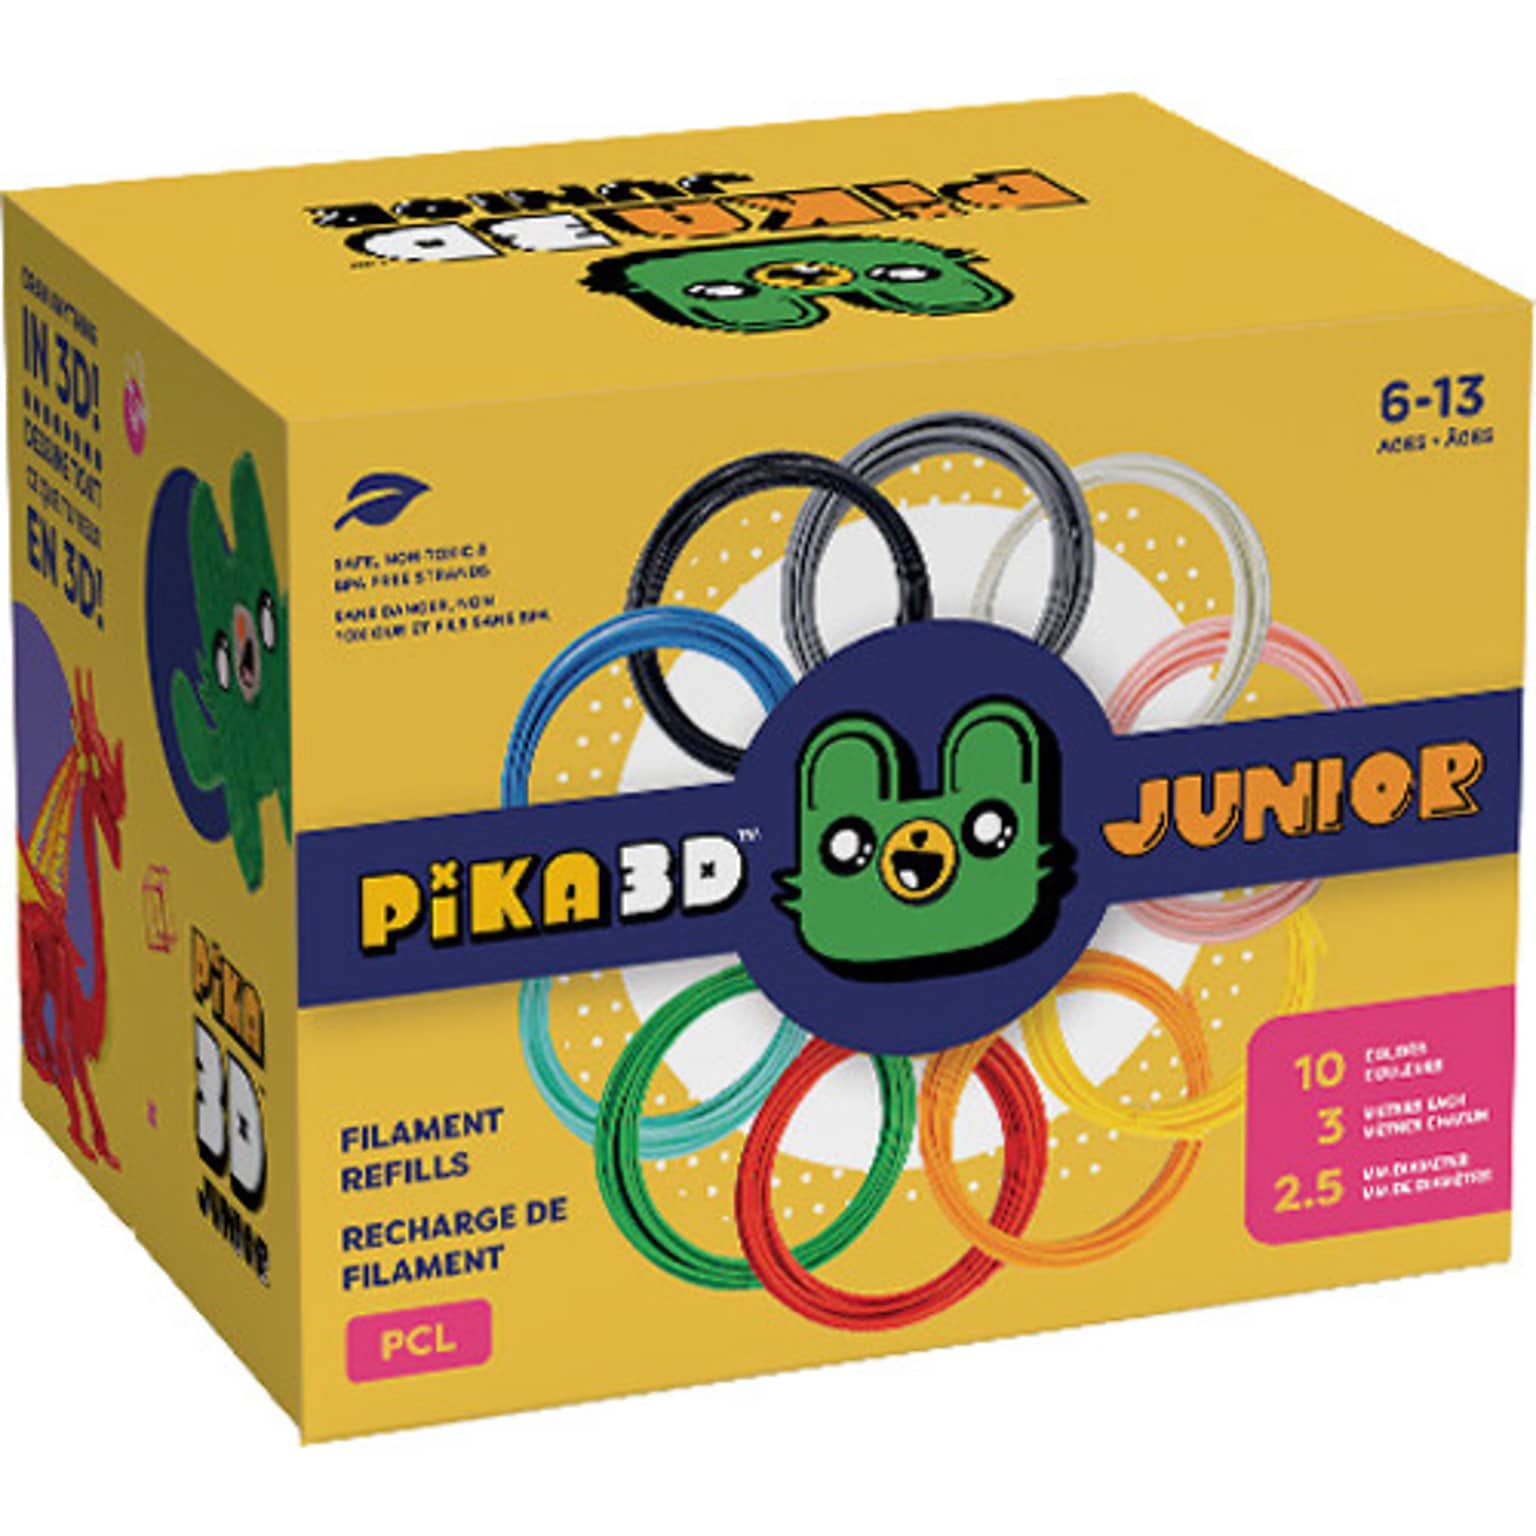 PiKA3D Pika3D Junior Filament Refills For 3D Pens, Multicolor (PIKAJRFILL10)